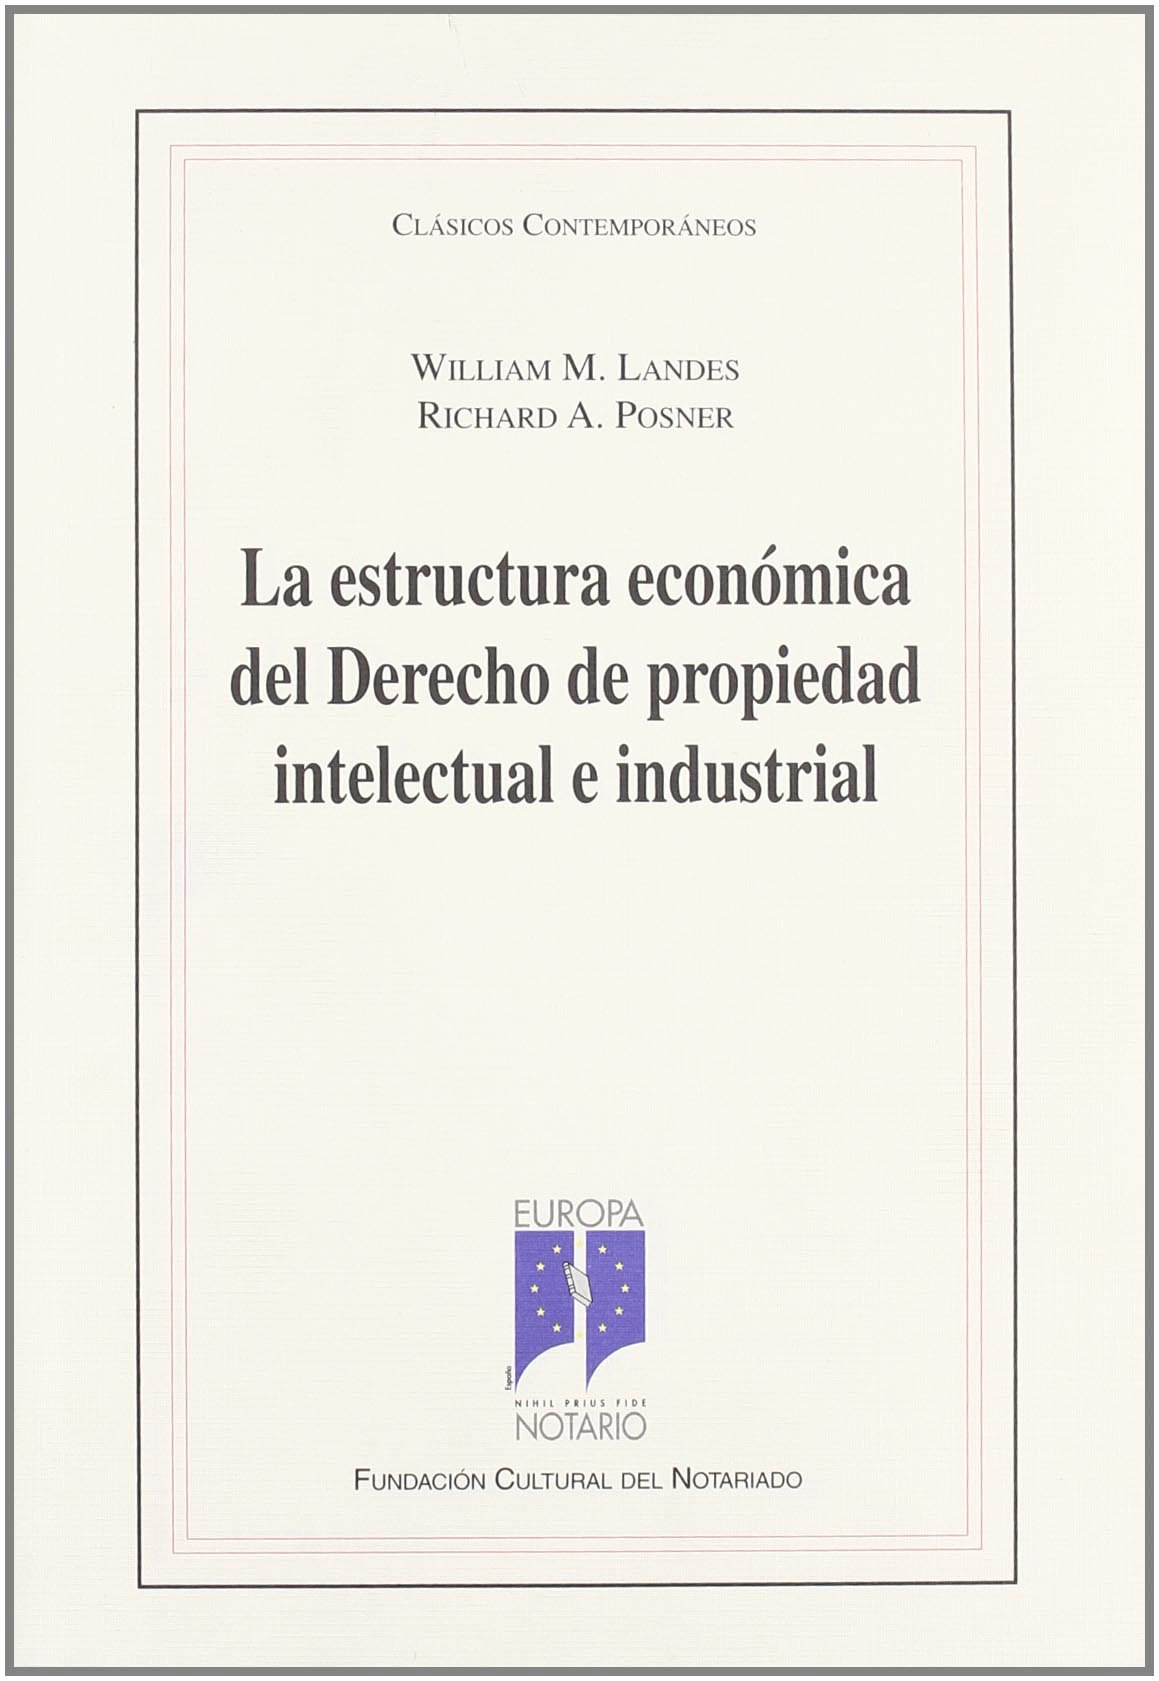 La estructura económica del Derecho de propiedad intelectual e industrial